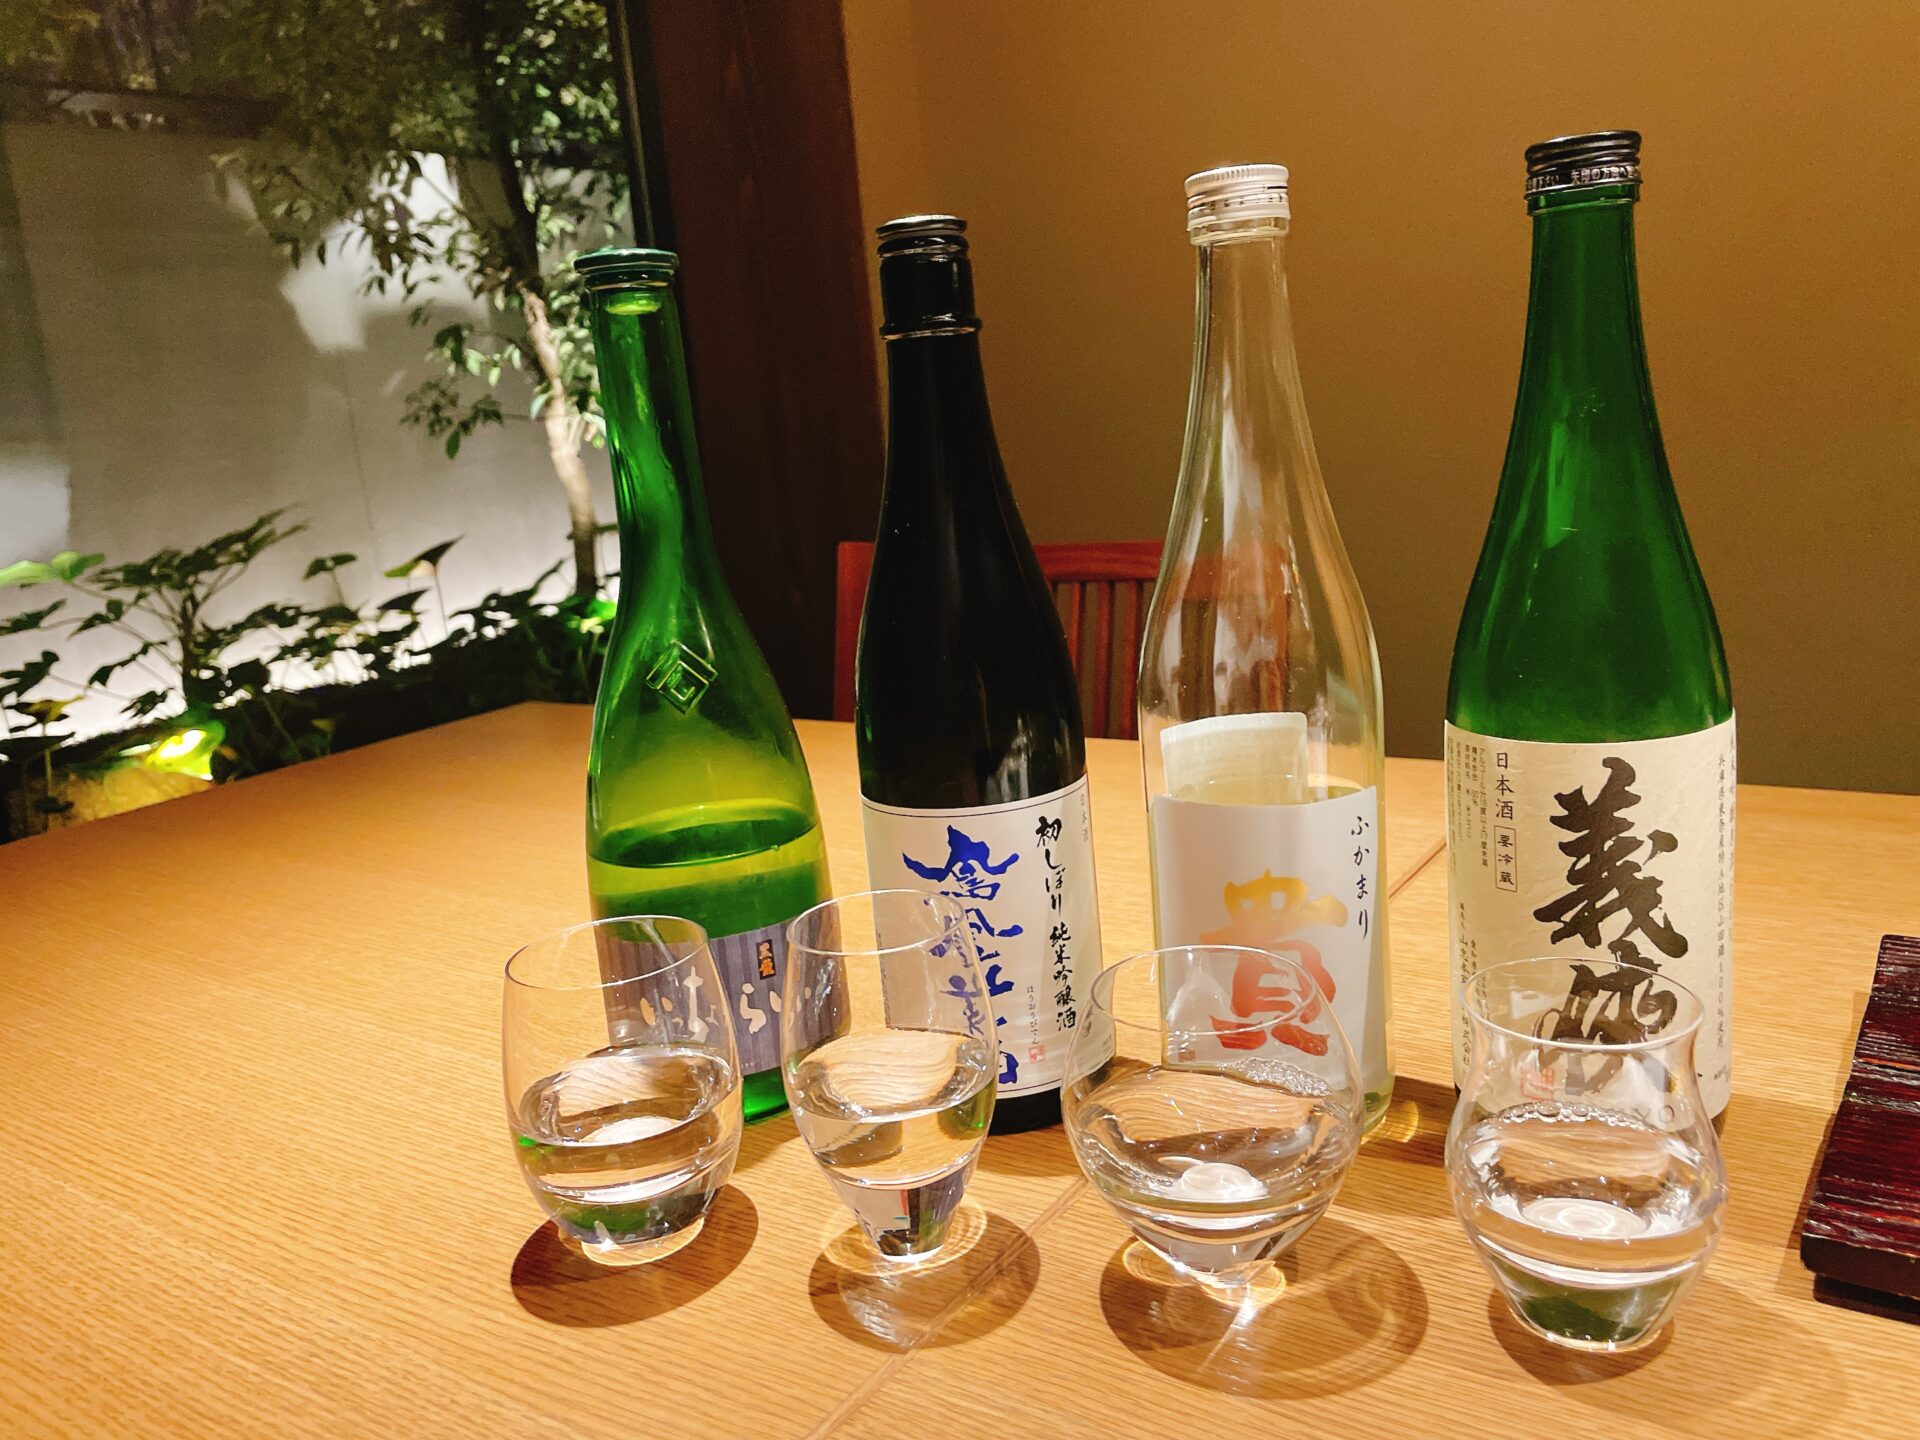 由縁別邸 代田の露天風呂付き客室の日本酒